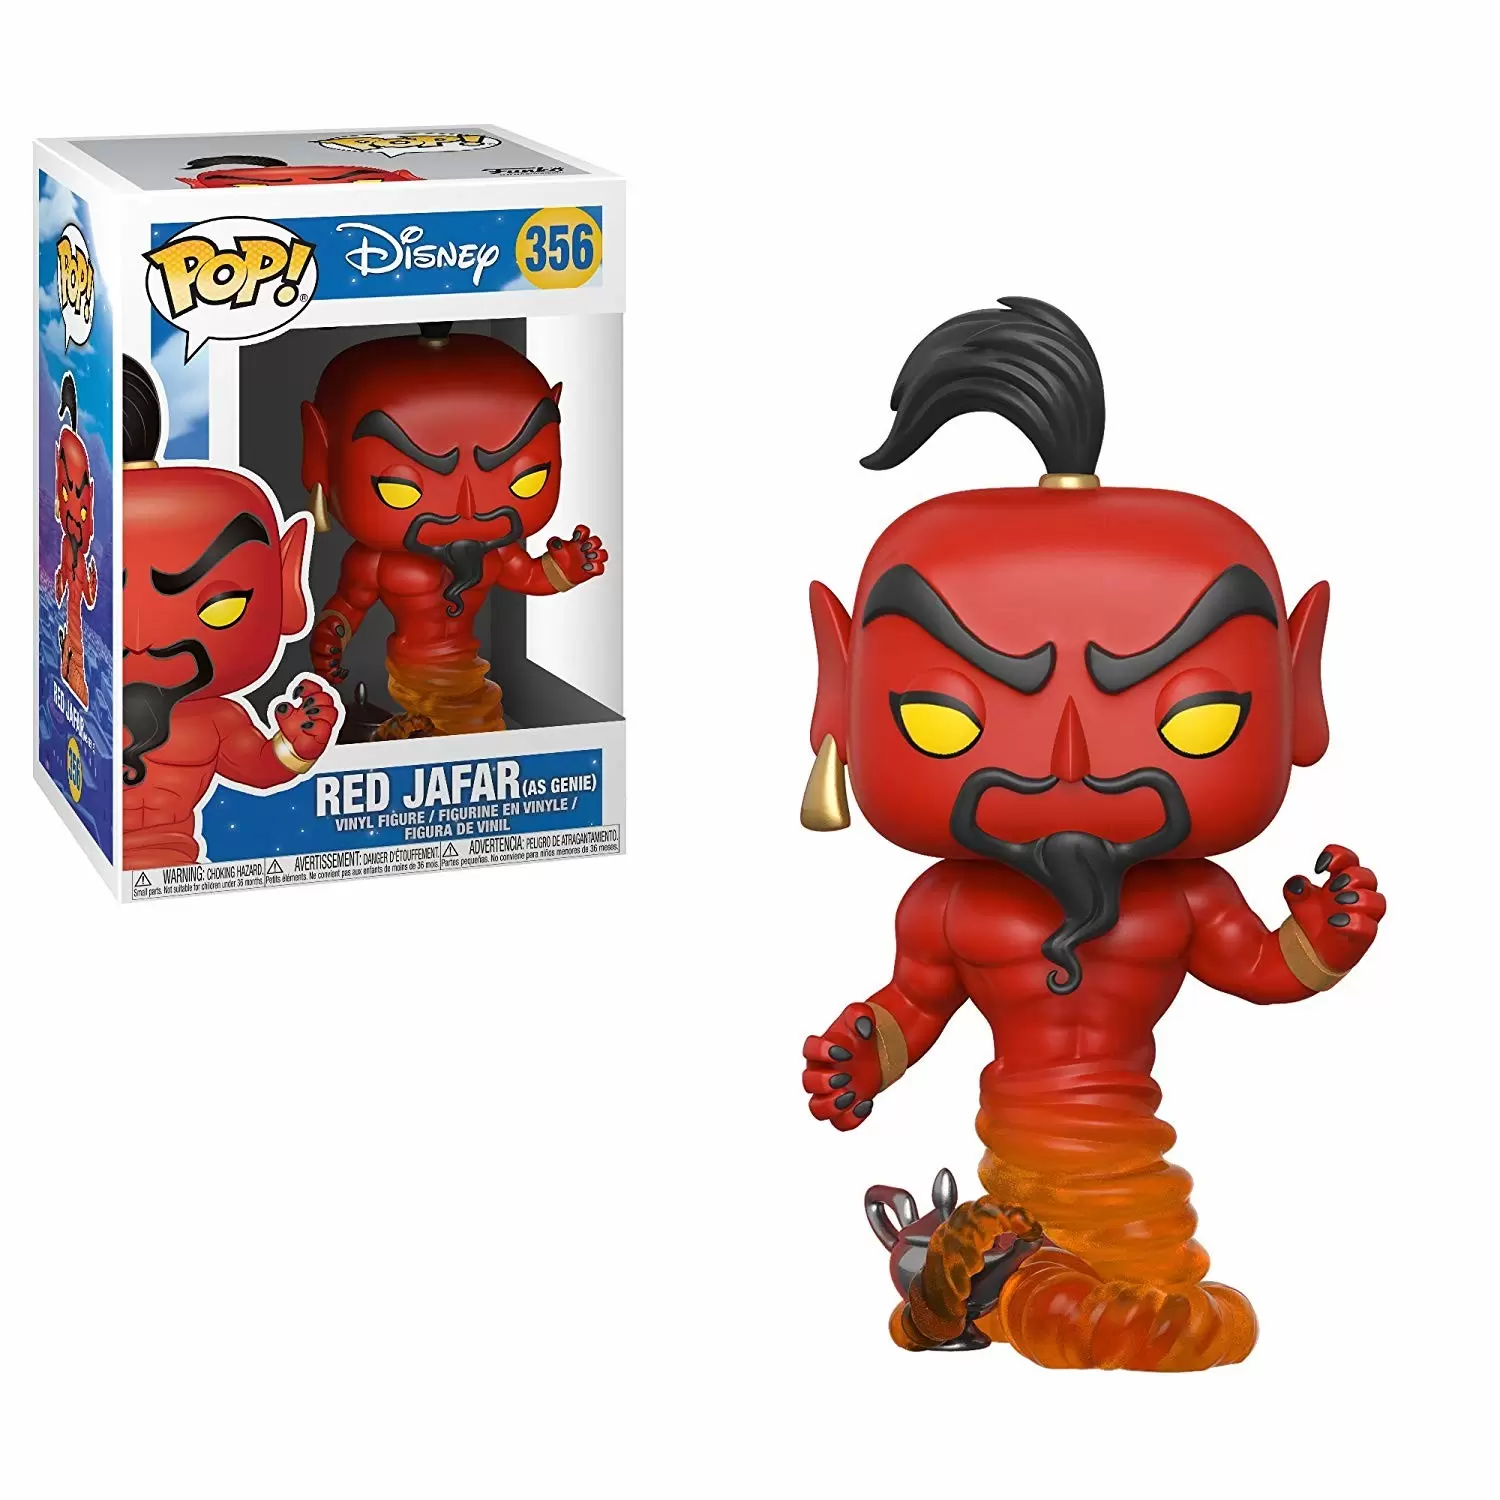 POP! Disney - Aladdin - Red Jafar (as Genie)